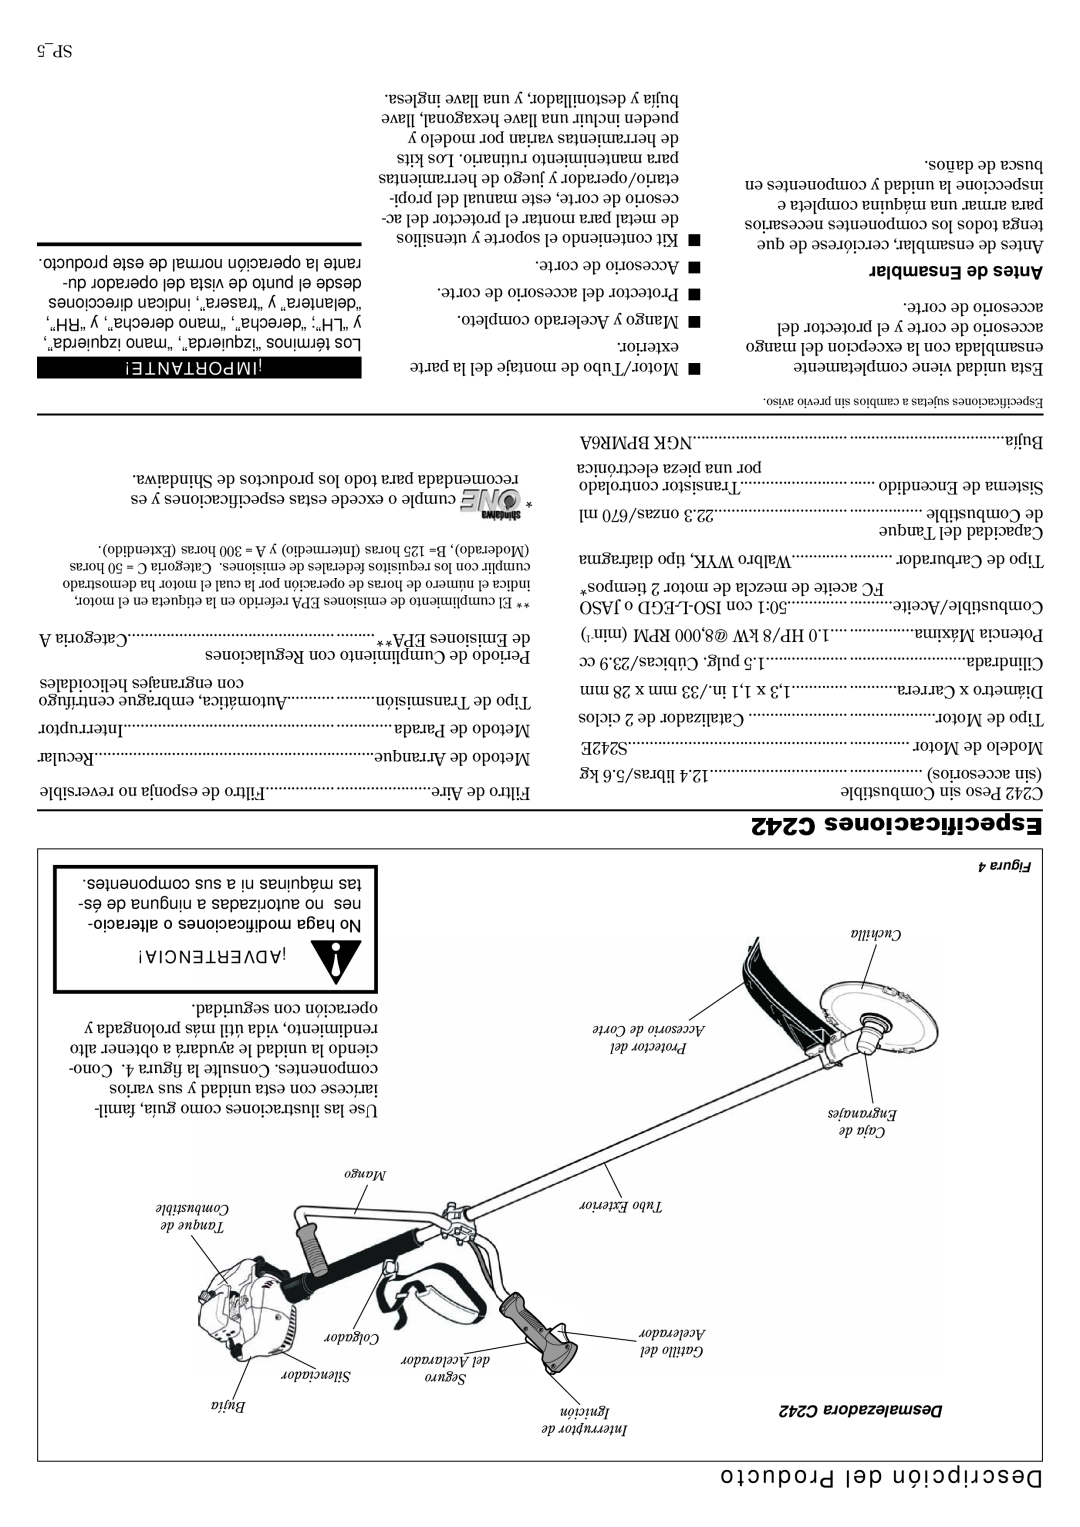 Shindaiwa 81359 manual C242 Especificaciones, Producto del Descripción, Ensamblar de Antes, ¡Importante, ¡Advertencia 